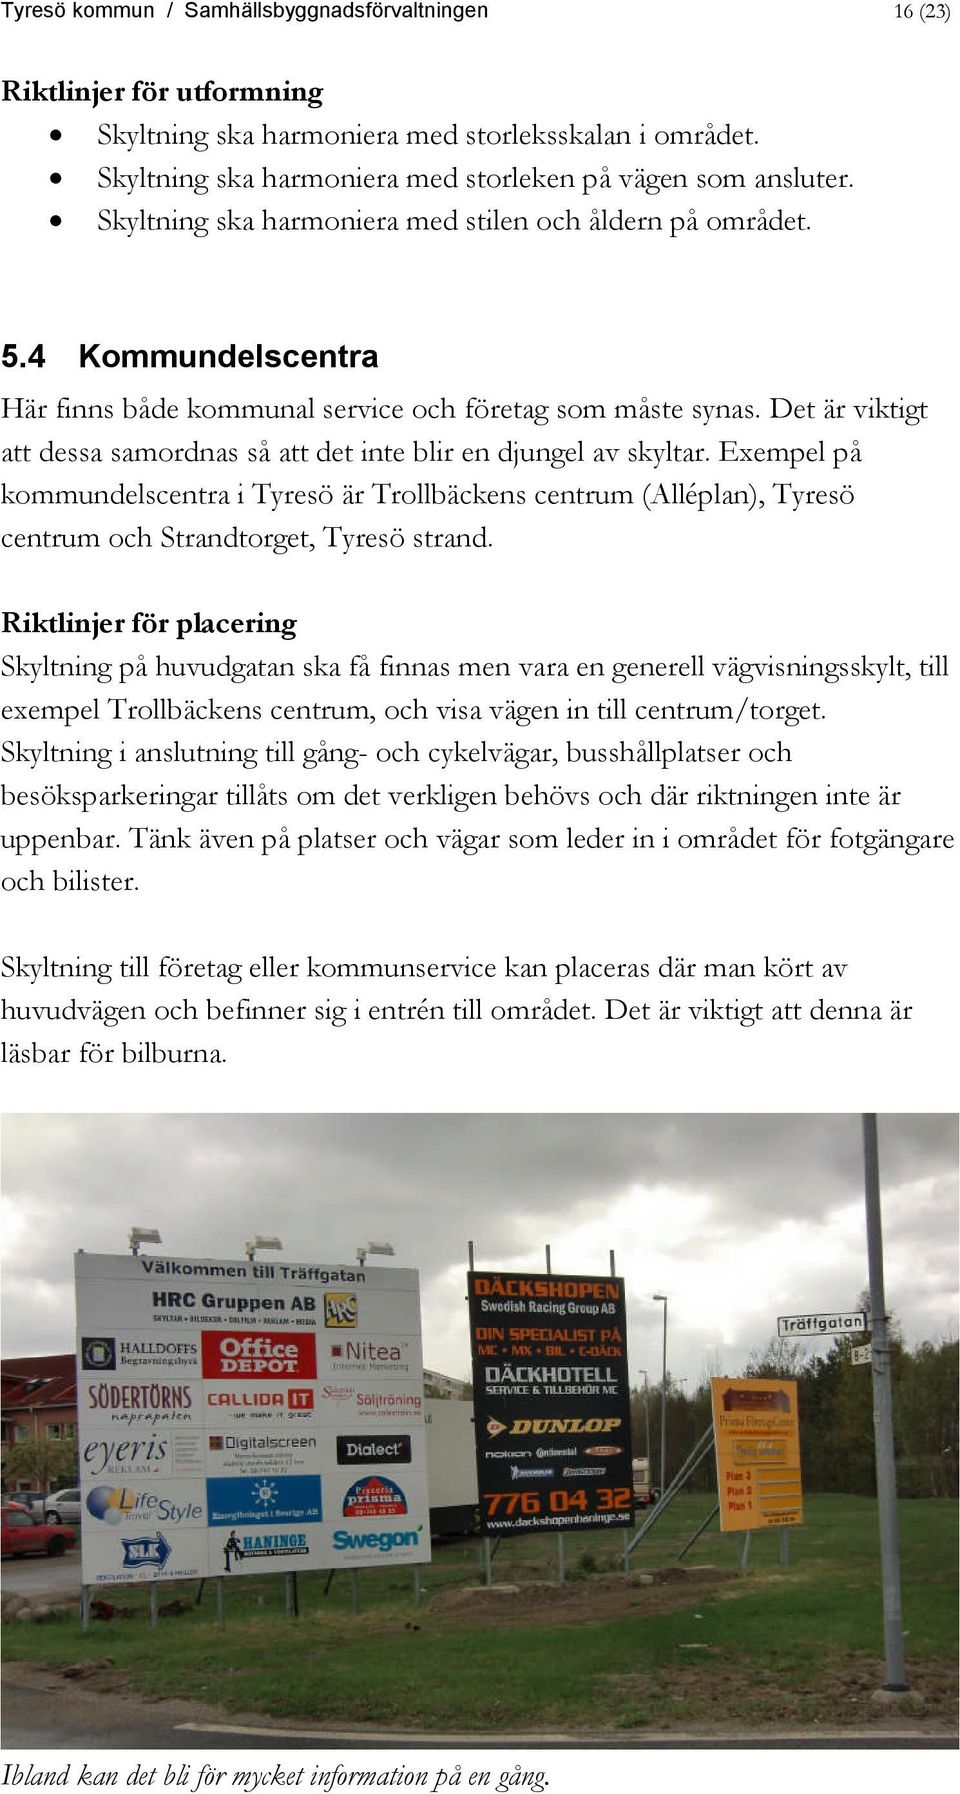 Det är viktigt att dessa samordnas så att det inte blir en djungel av skyltar. Exempel på kommundelscentra i Tyresö är Trollbäckens centrum (Alléplan), Tyresö centrum och Strandtorget, Tyresö strand.